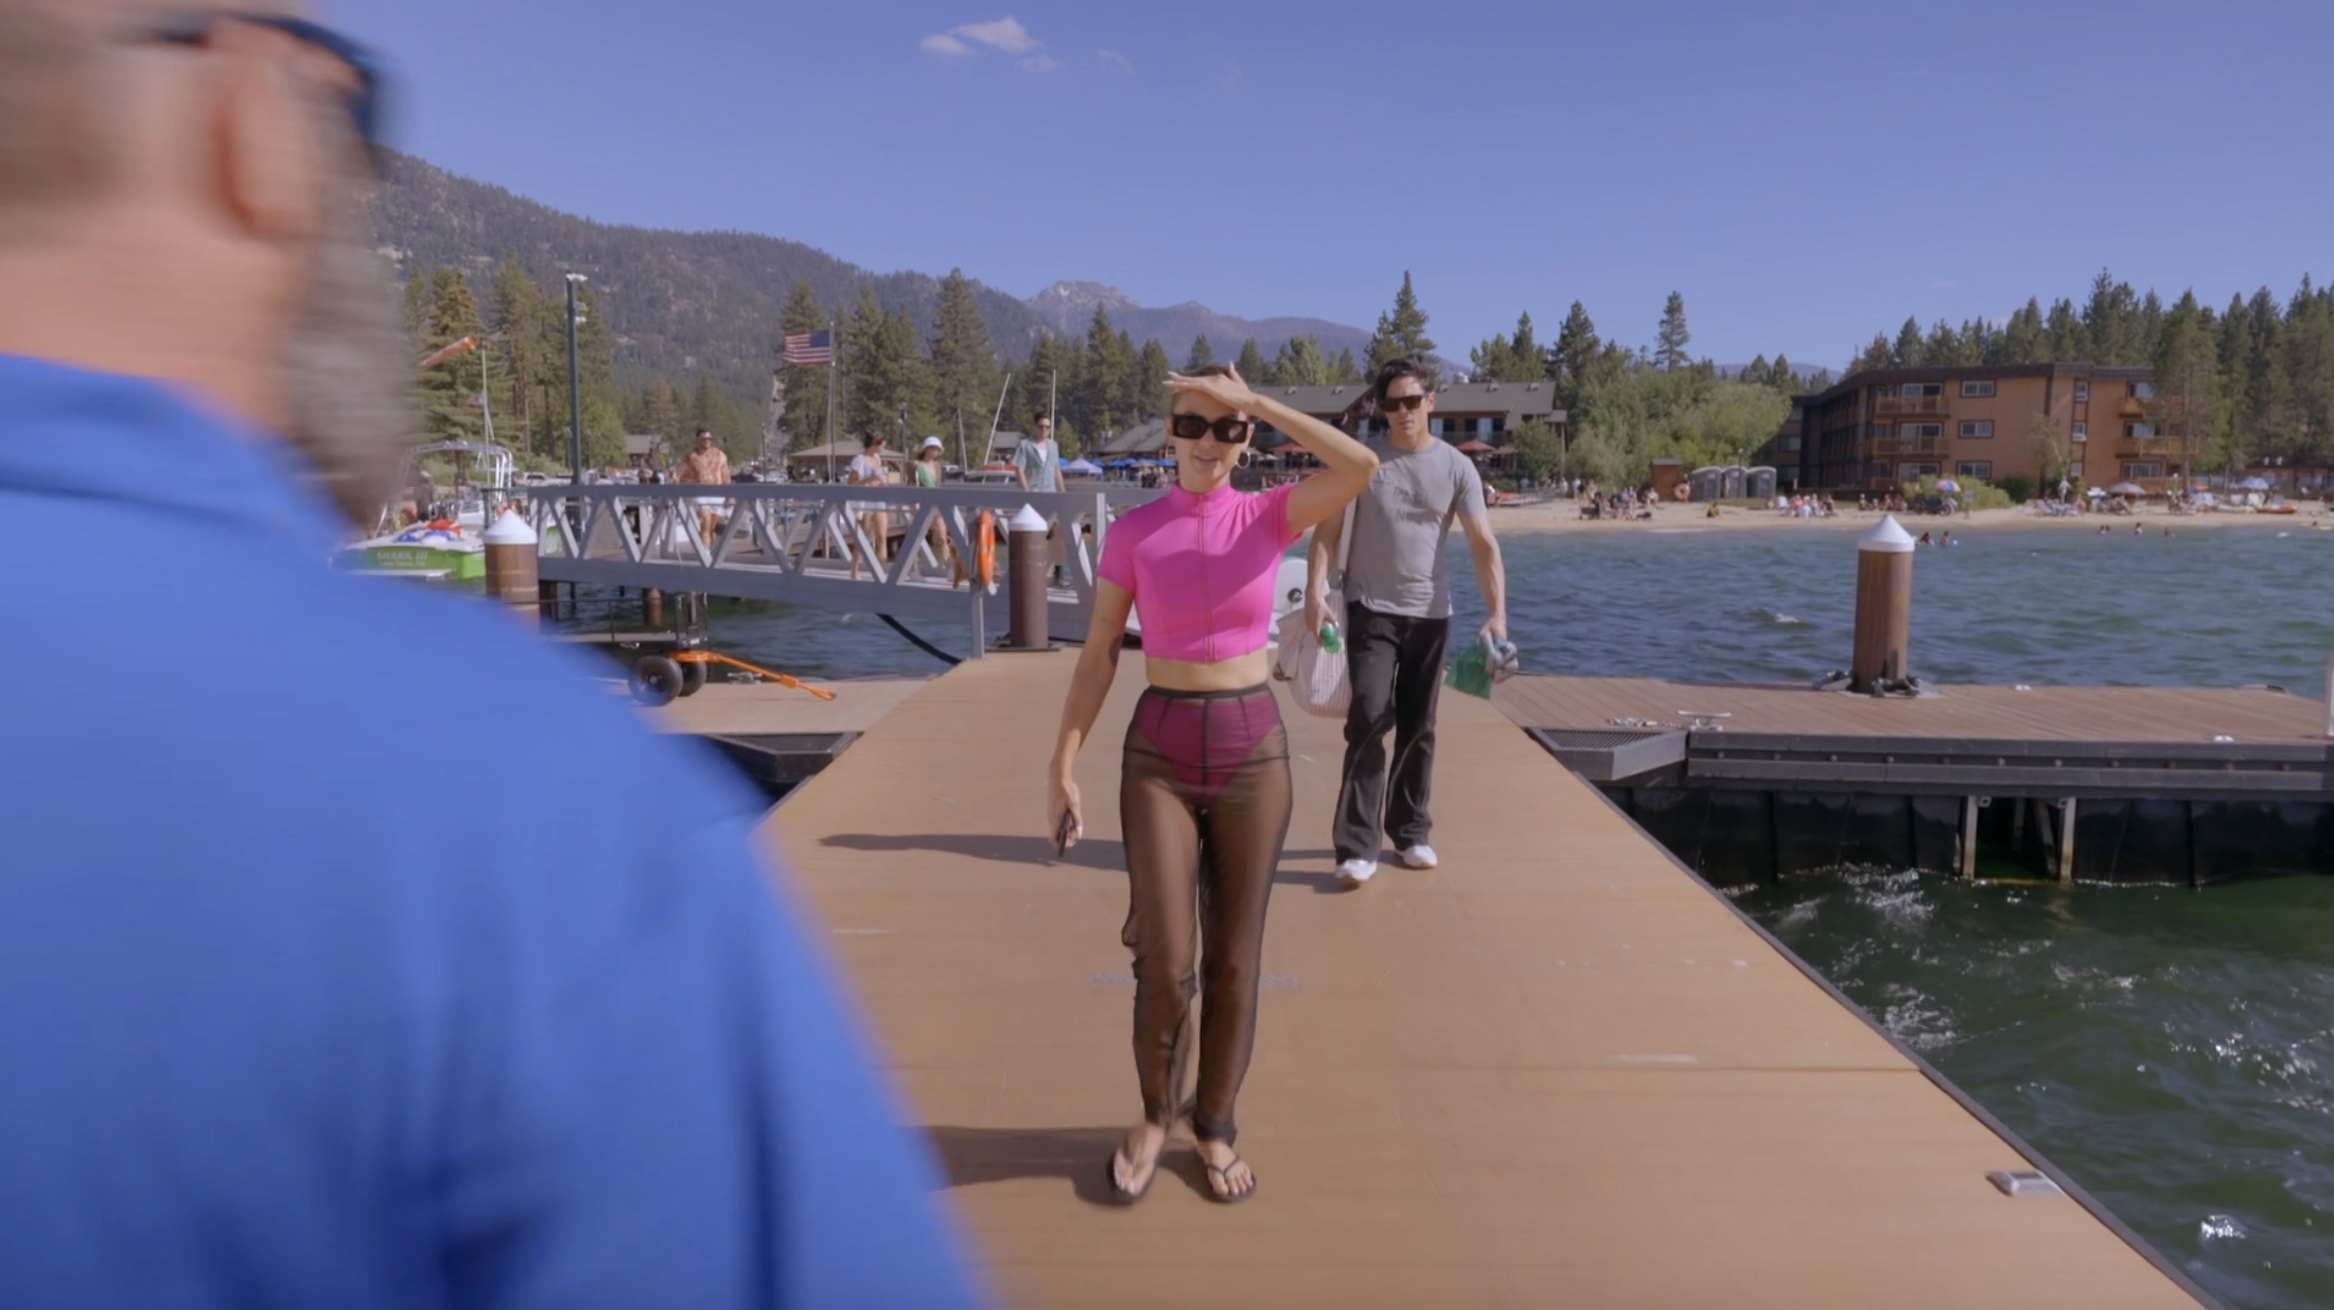 Lala walking down a boardwalk in a pink zip up swim top